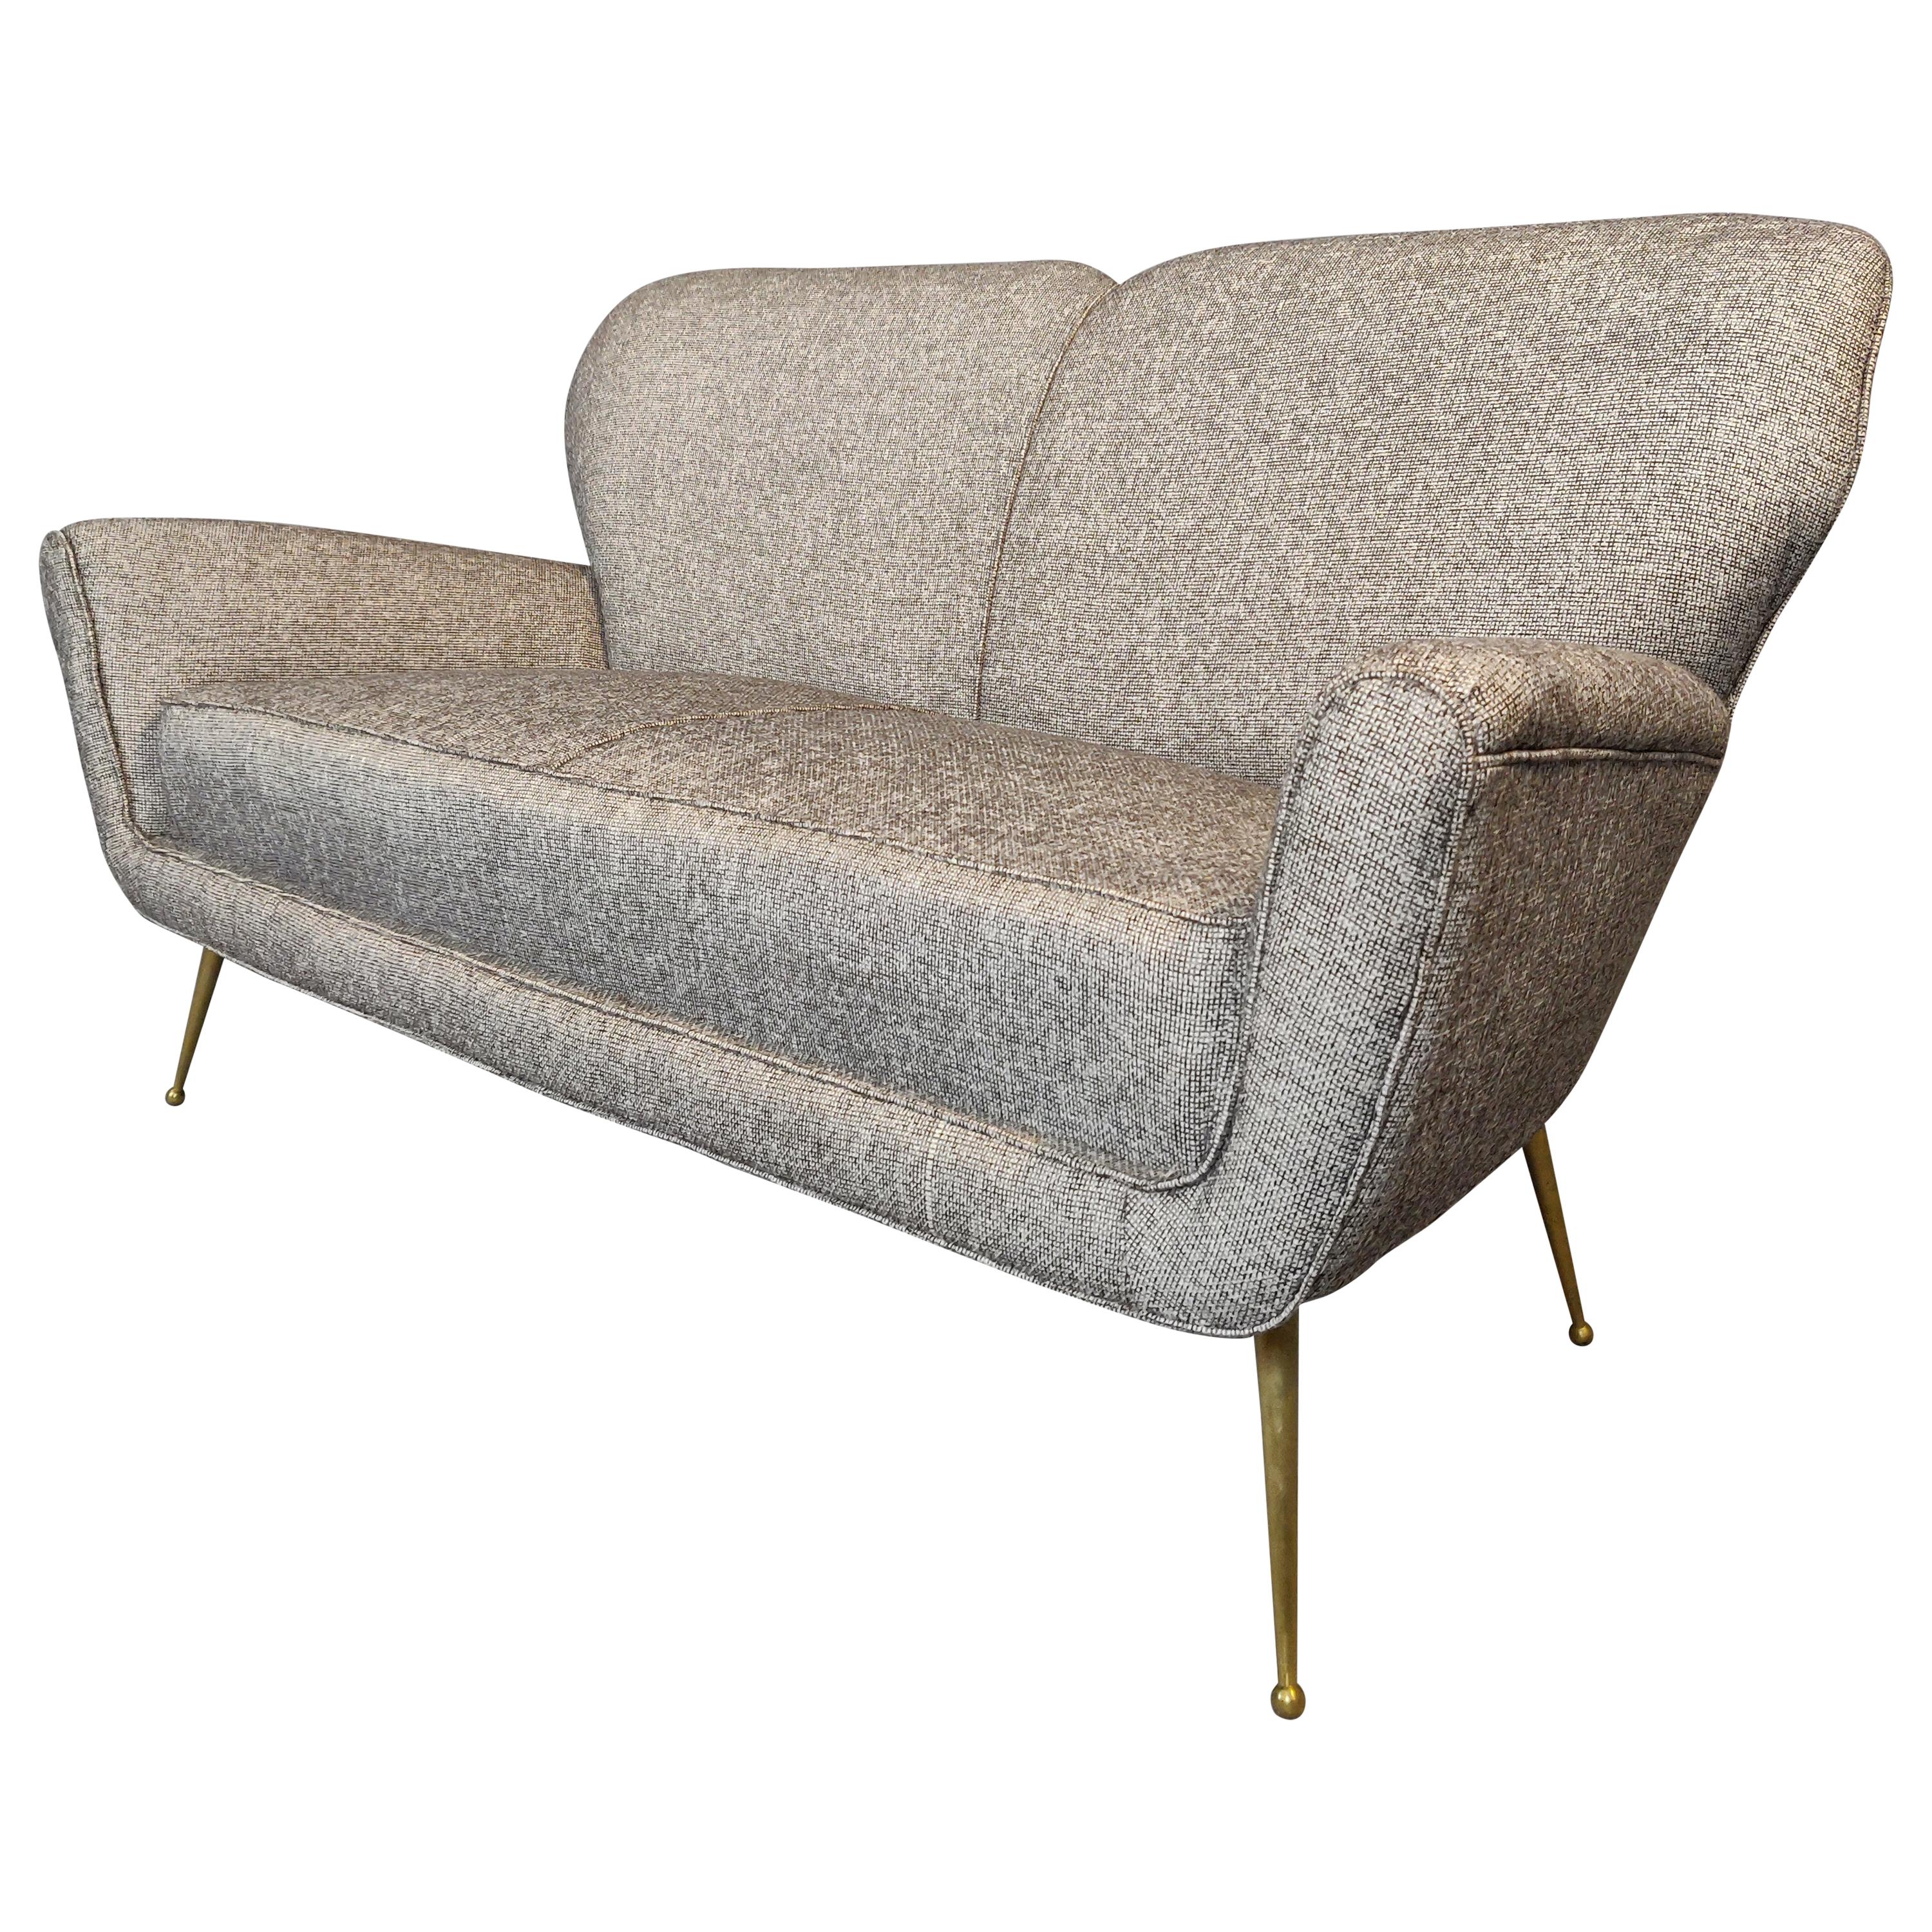 Italian Sofa, New Upholstery